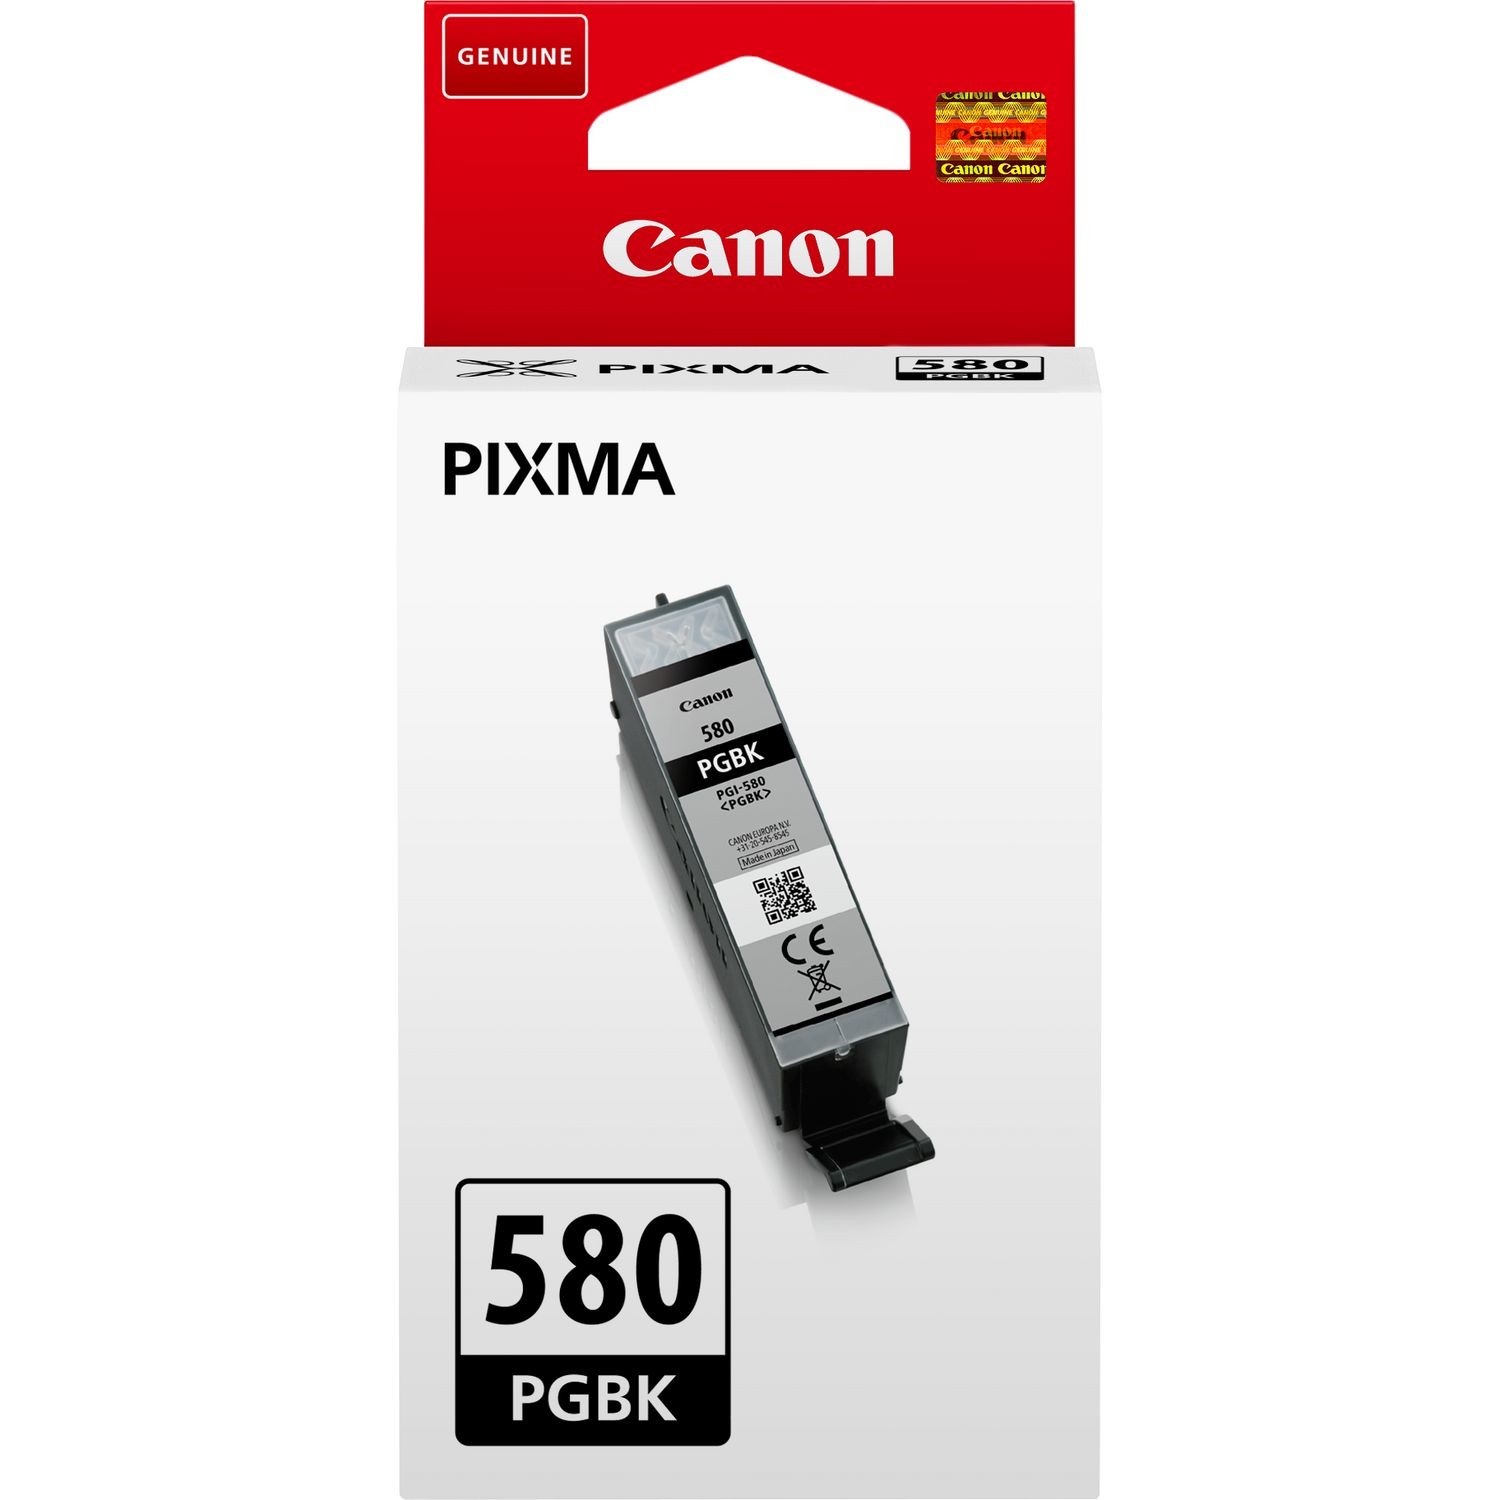 Canon cartouche d'encre PG-37, 219 pages, OEM 2145B001, noir